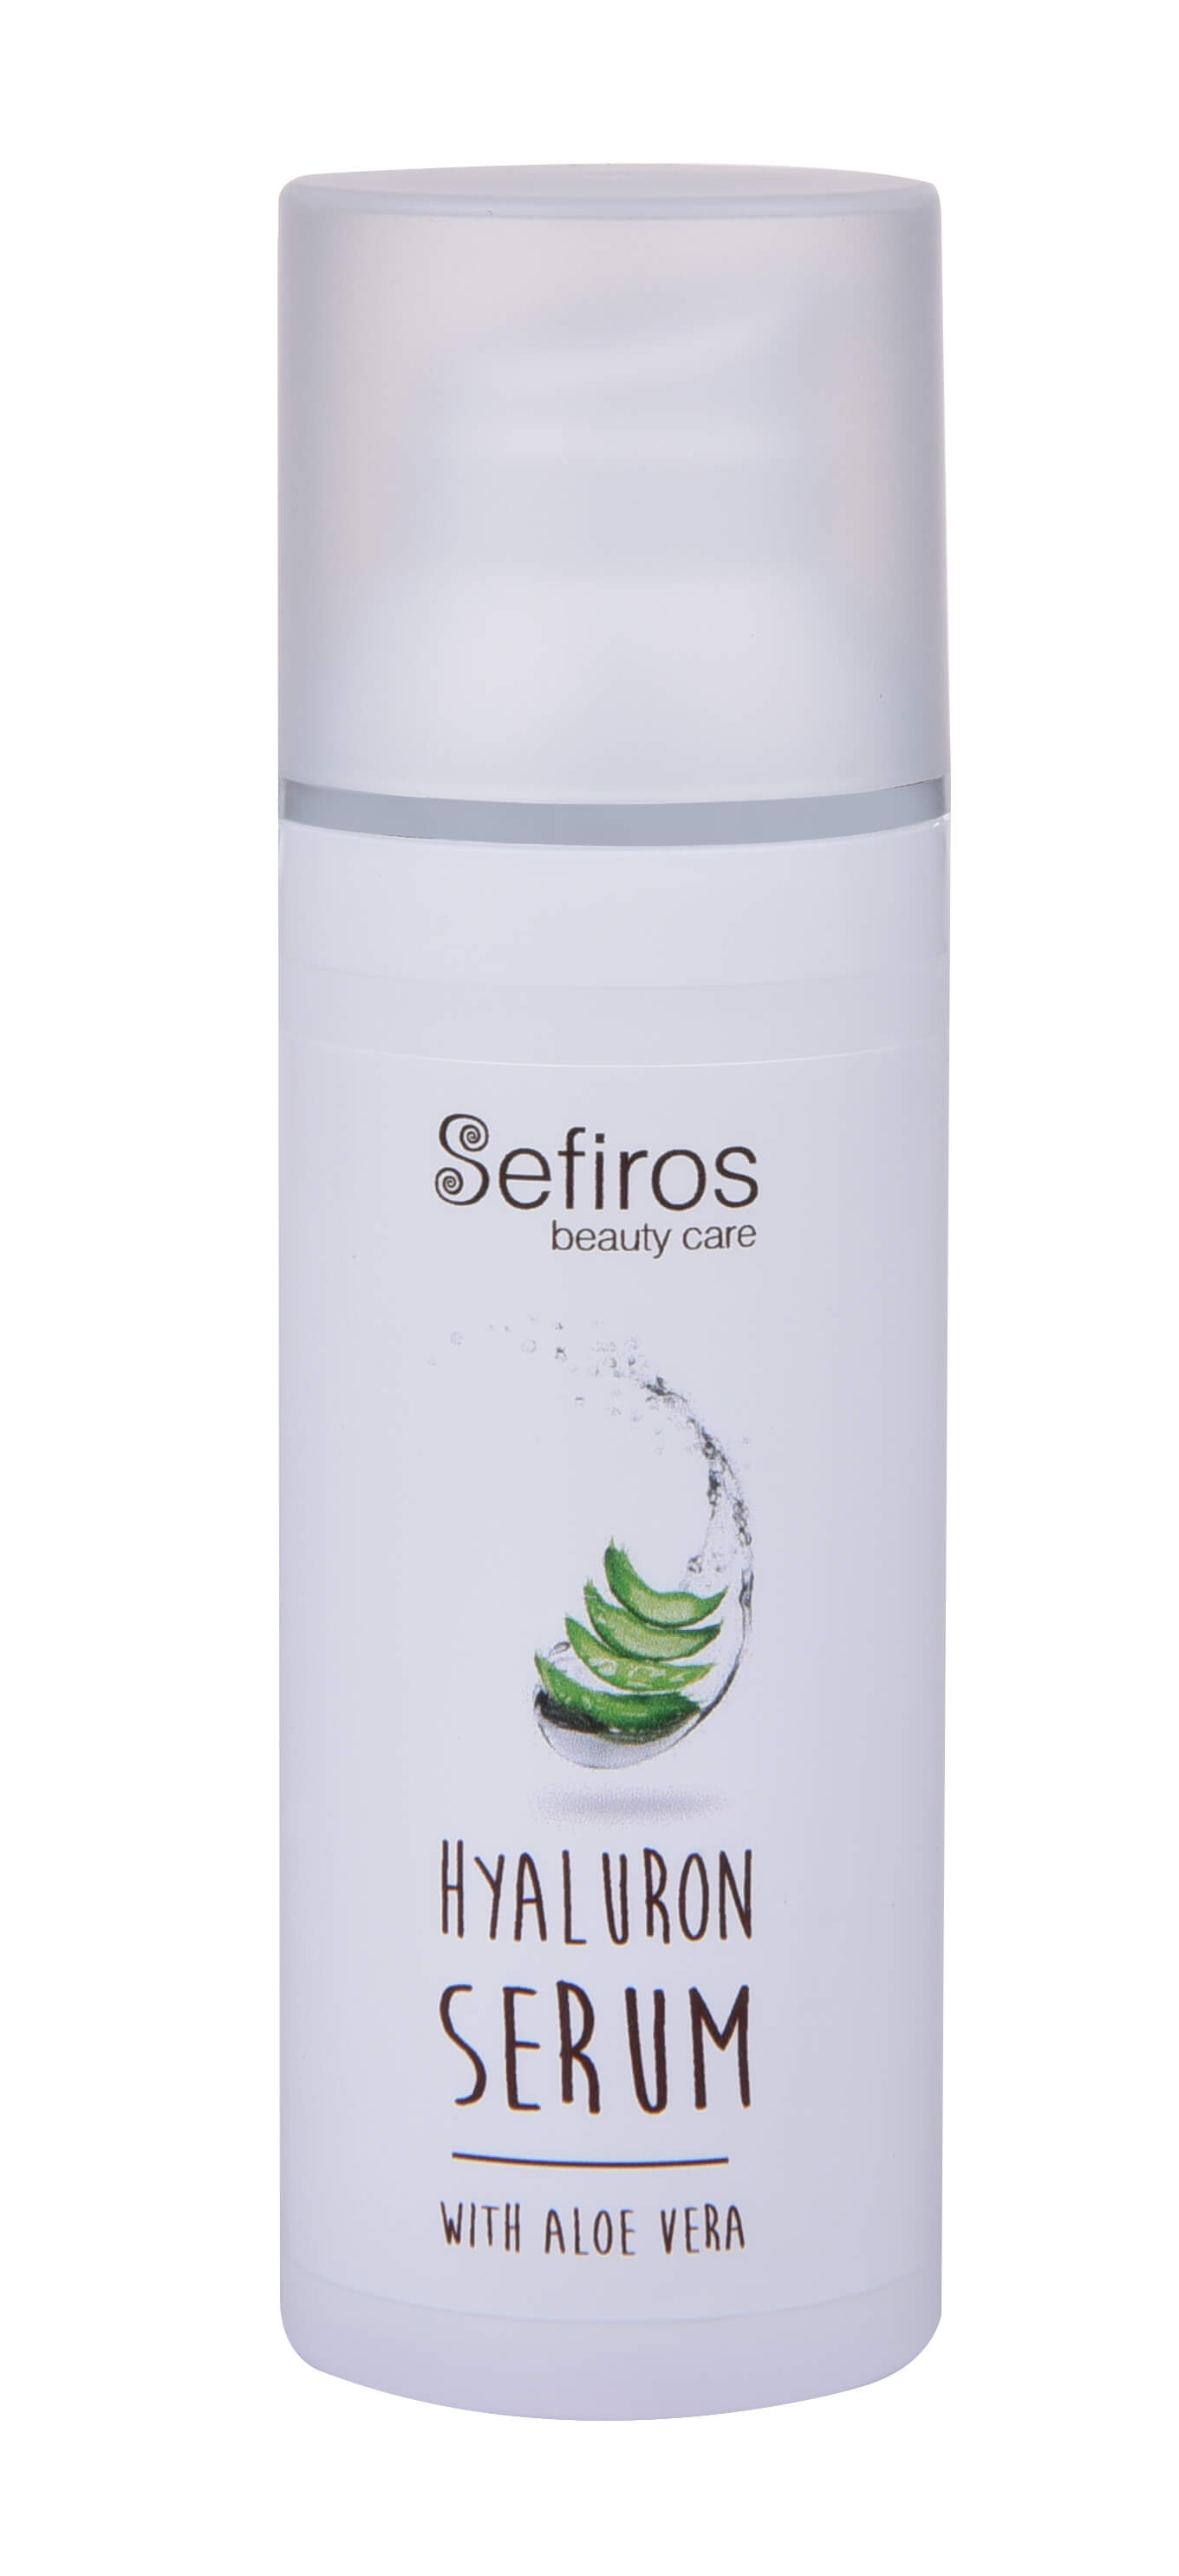 Zobrazit detail výrobku Sefiross Hyaluronové sérum na obličej s aloe vera (Hyaluron Serum With Aloe Vera) 50 ml